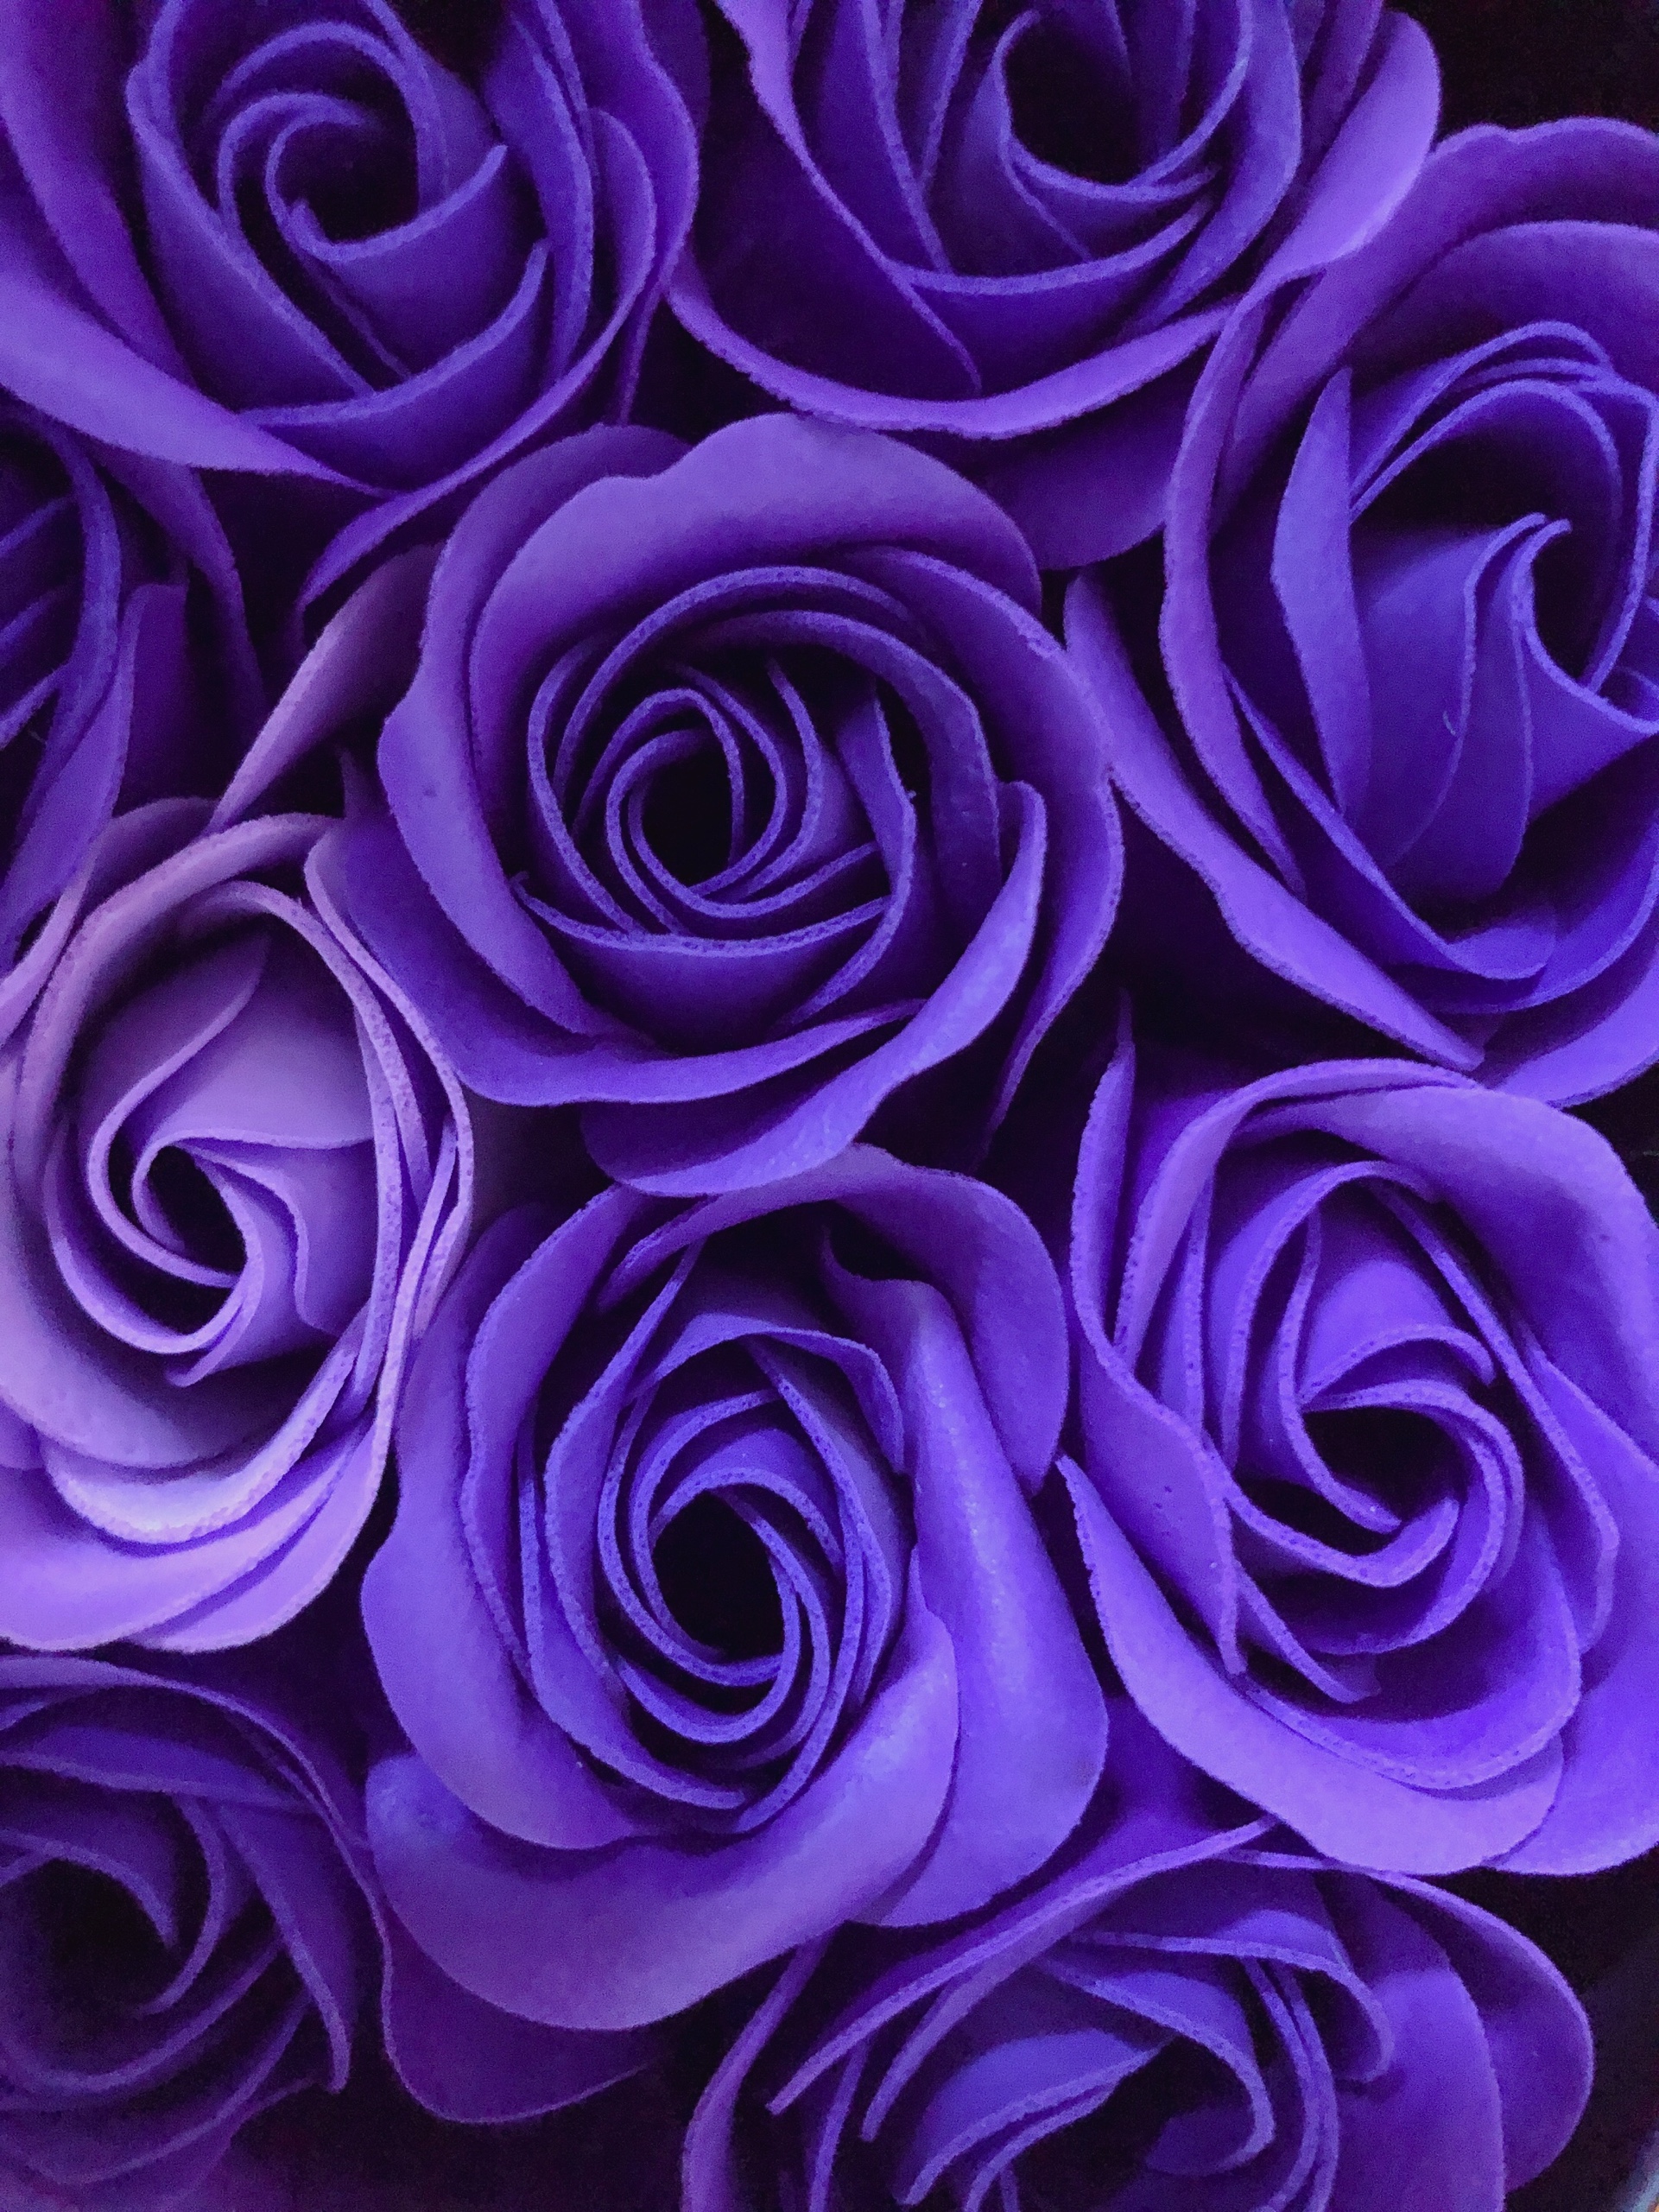 Hoa hồng trái tim hộp thiếc đựng 11 bông thích hợp tặng quà cho người yêu, bạn gái nhân các ngày lễ - Giao màu ngẫu nhiên